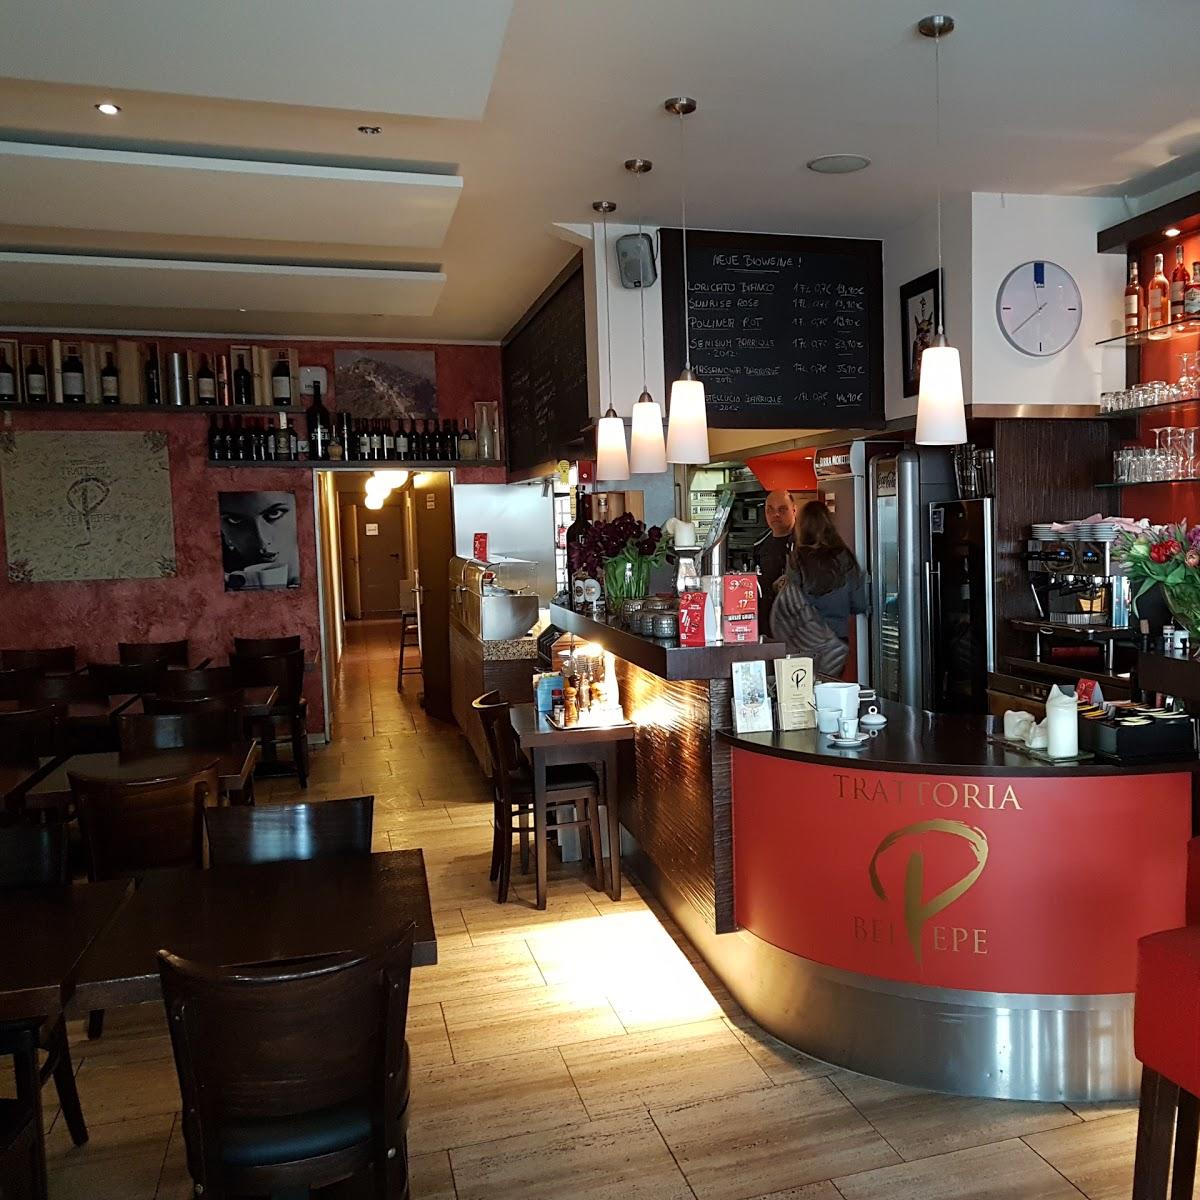 Restaurant "Trattoria bei Pepe" in  Lippstadt